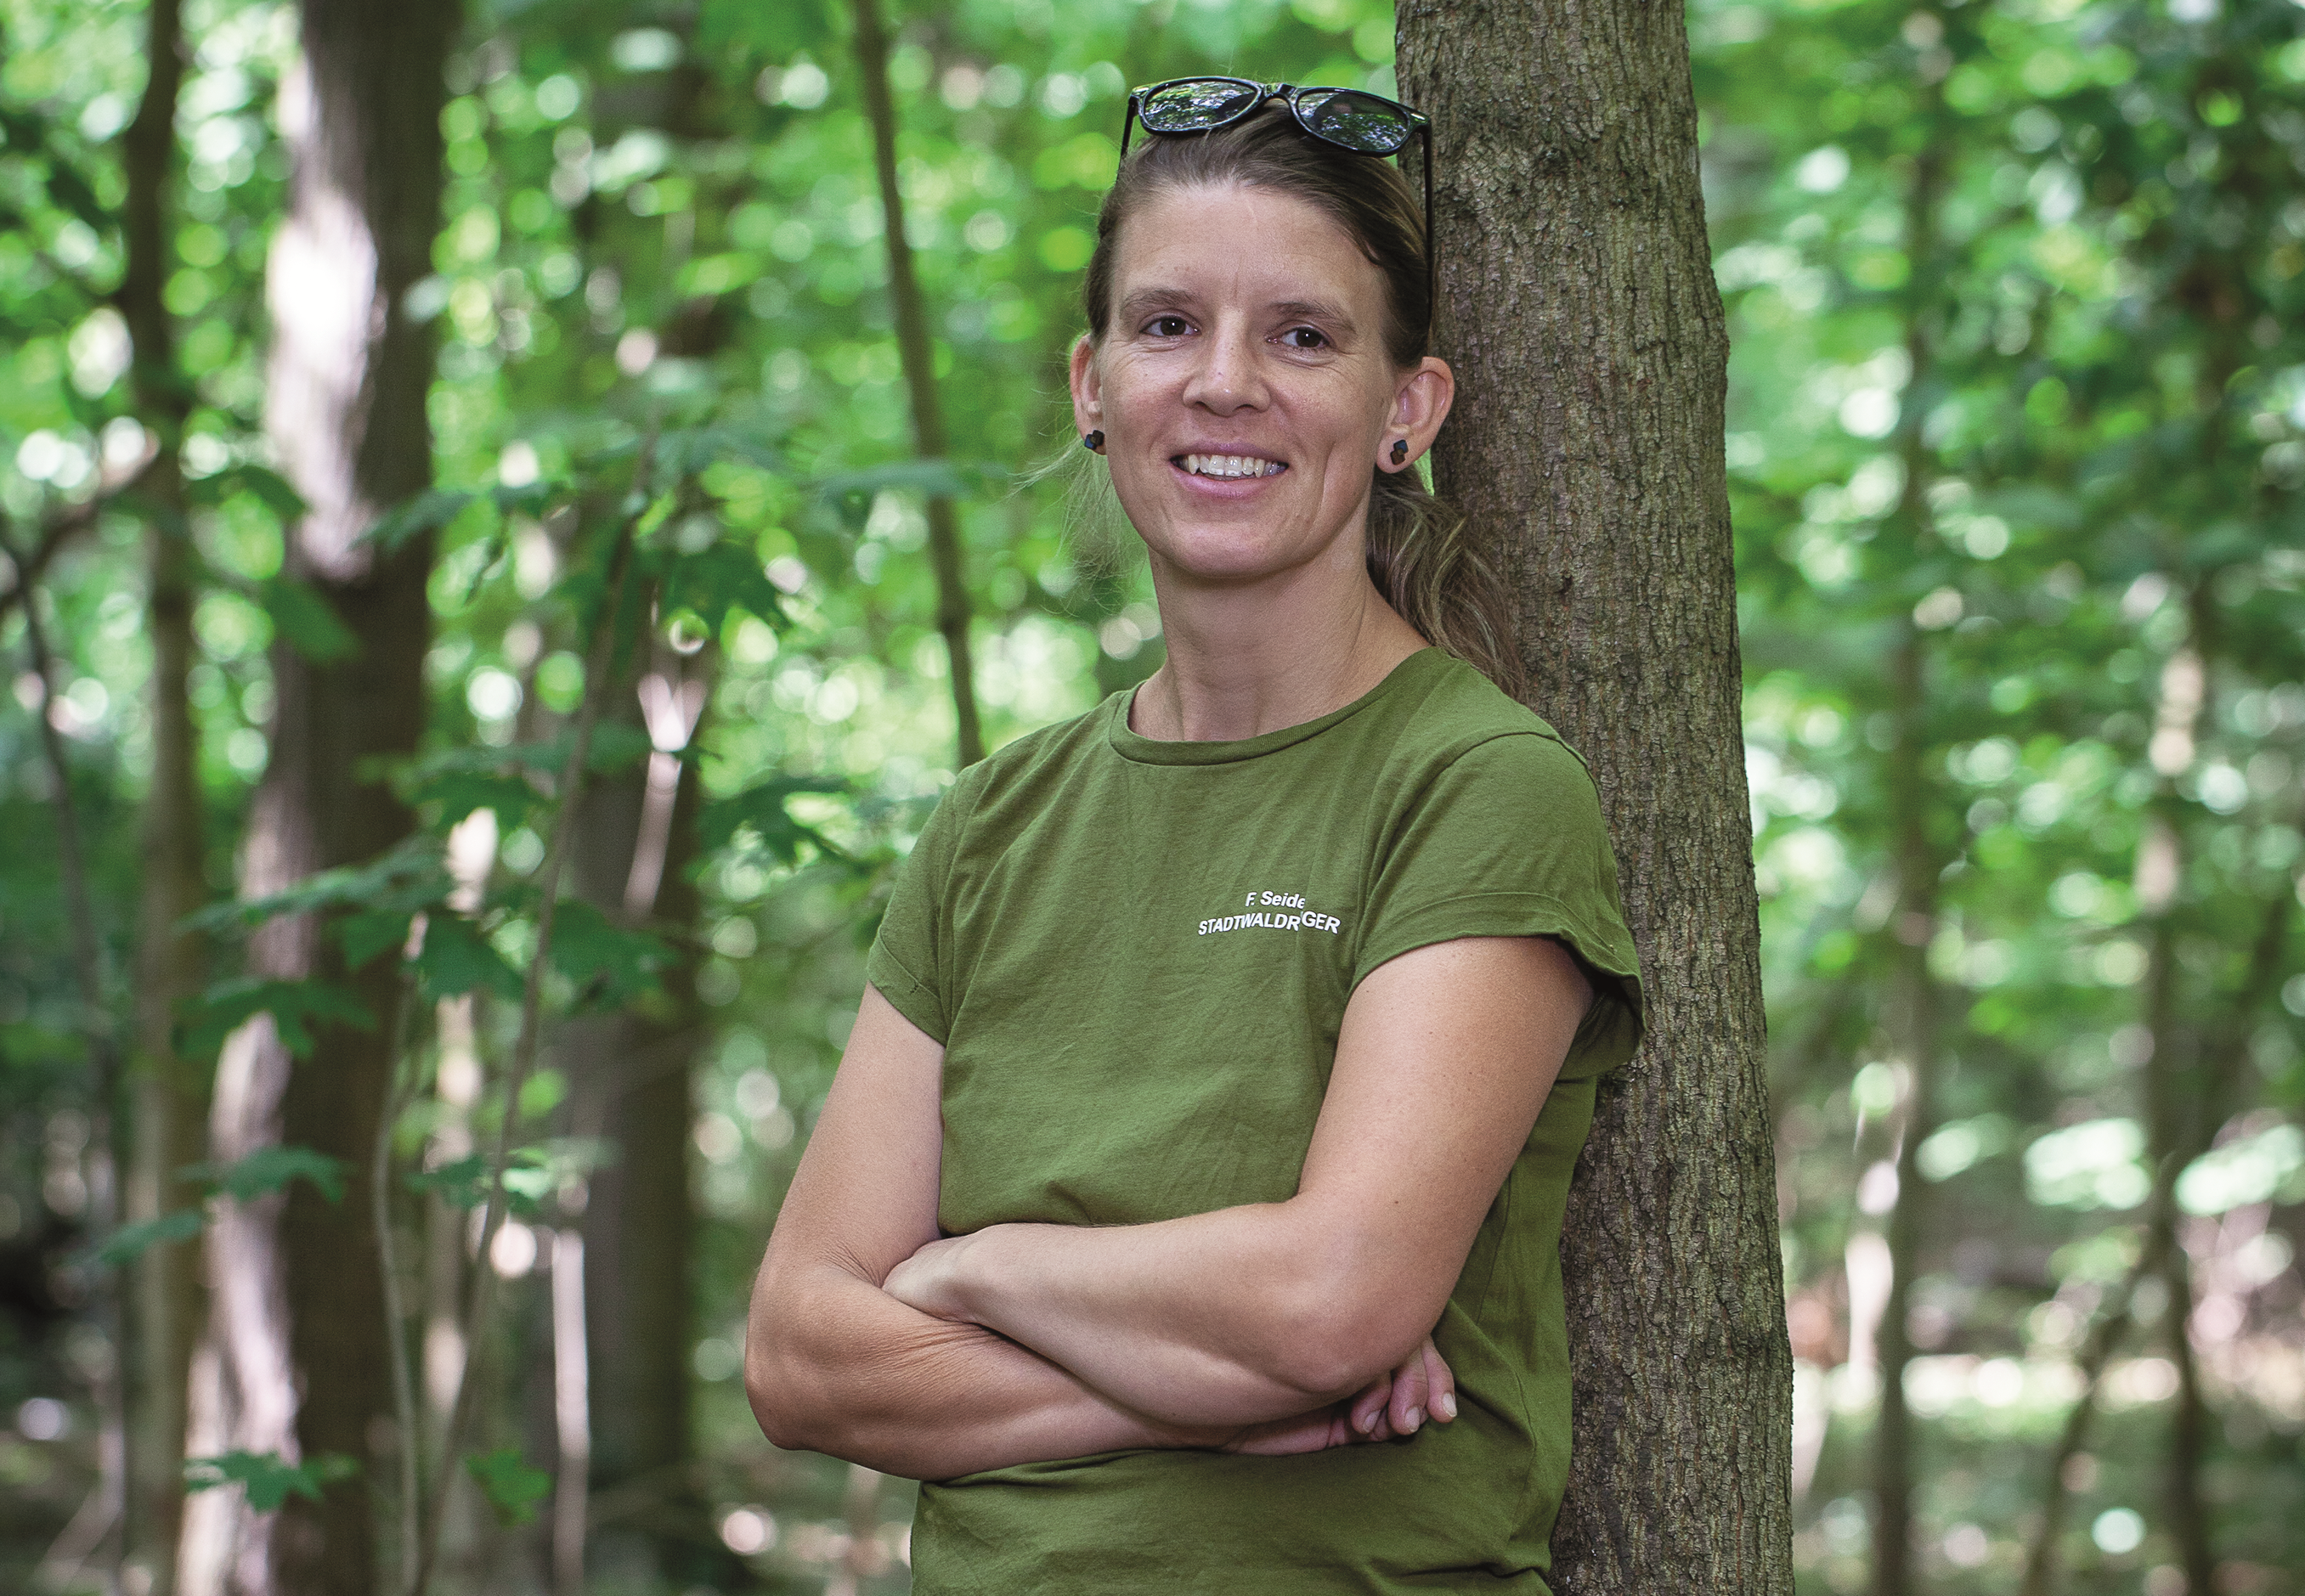   »Im Wald sind wir Menschen nur zu Gast« | Stadtwaldrangerin Franka Seidel über Artenvielfalt, Polizeibefugnisse und die Dinge der Natur  